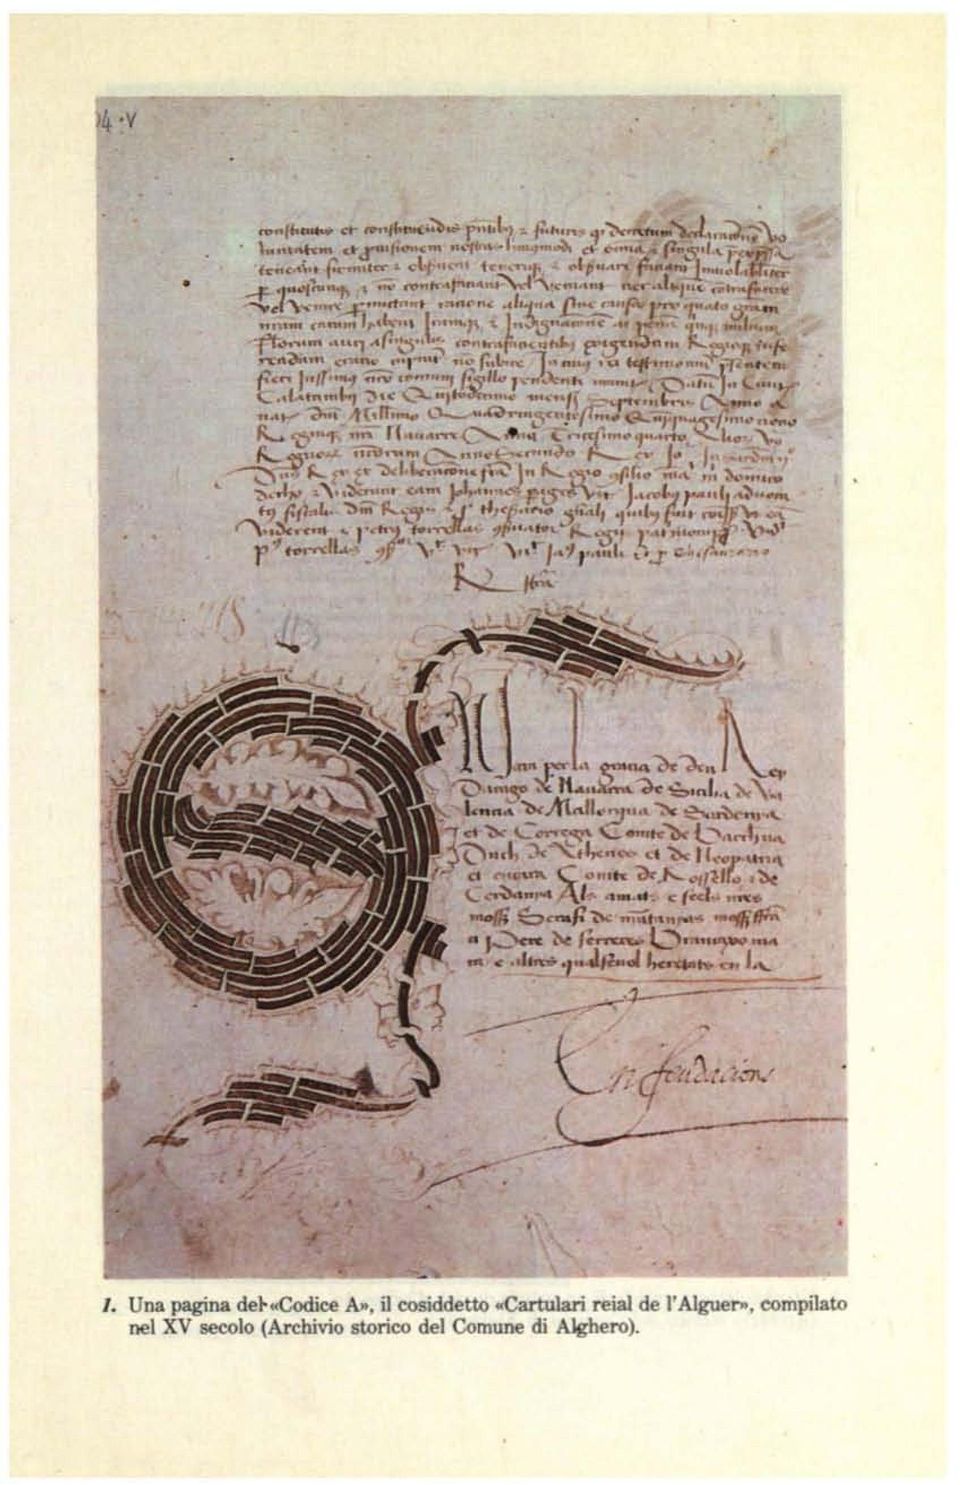 l'alguer>t, oompilato nel XV secolo